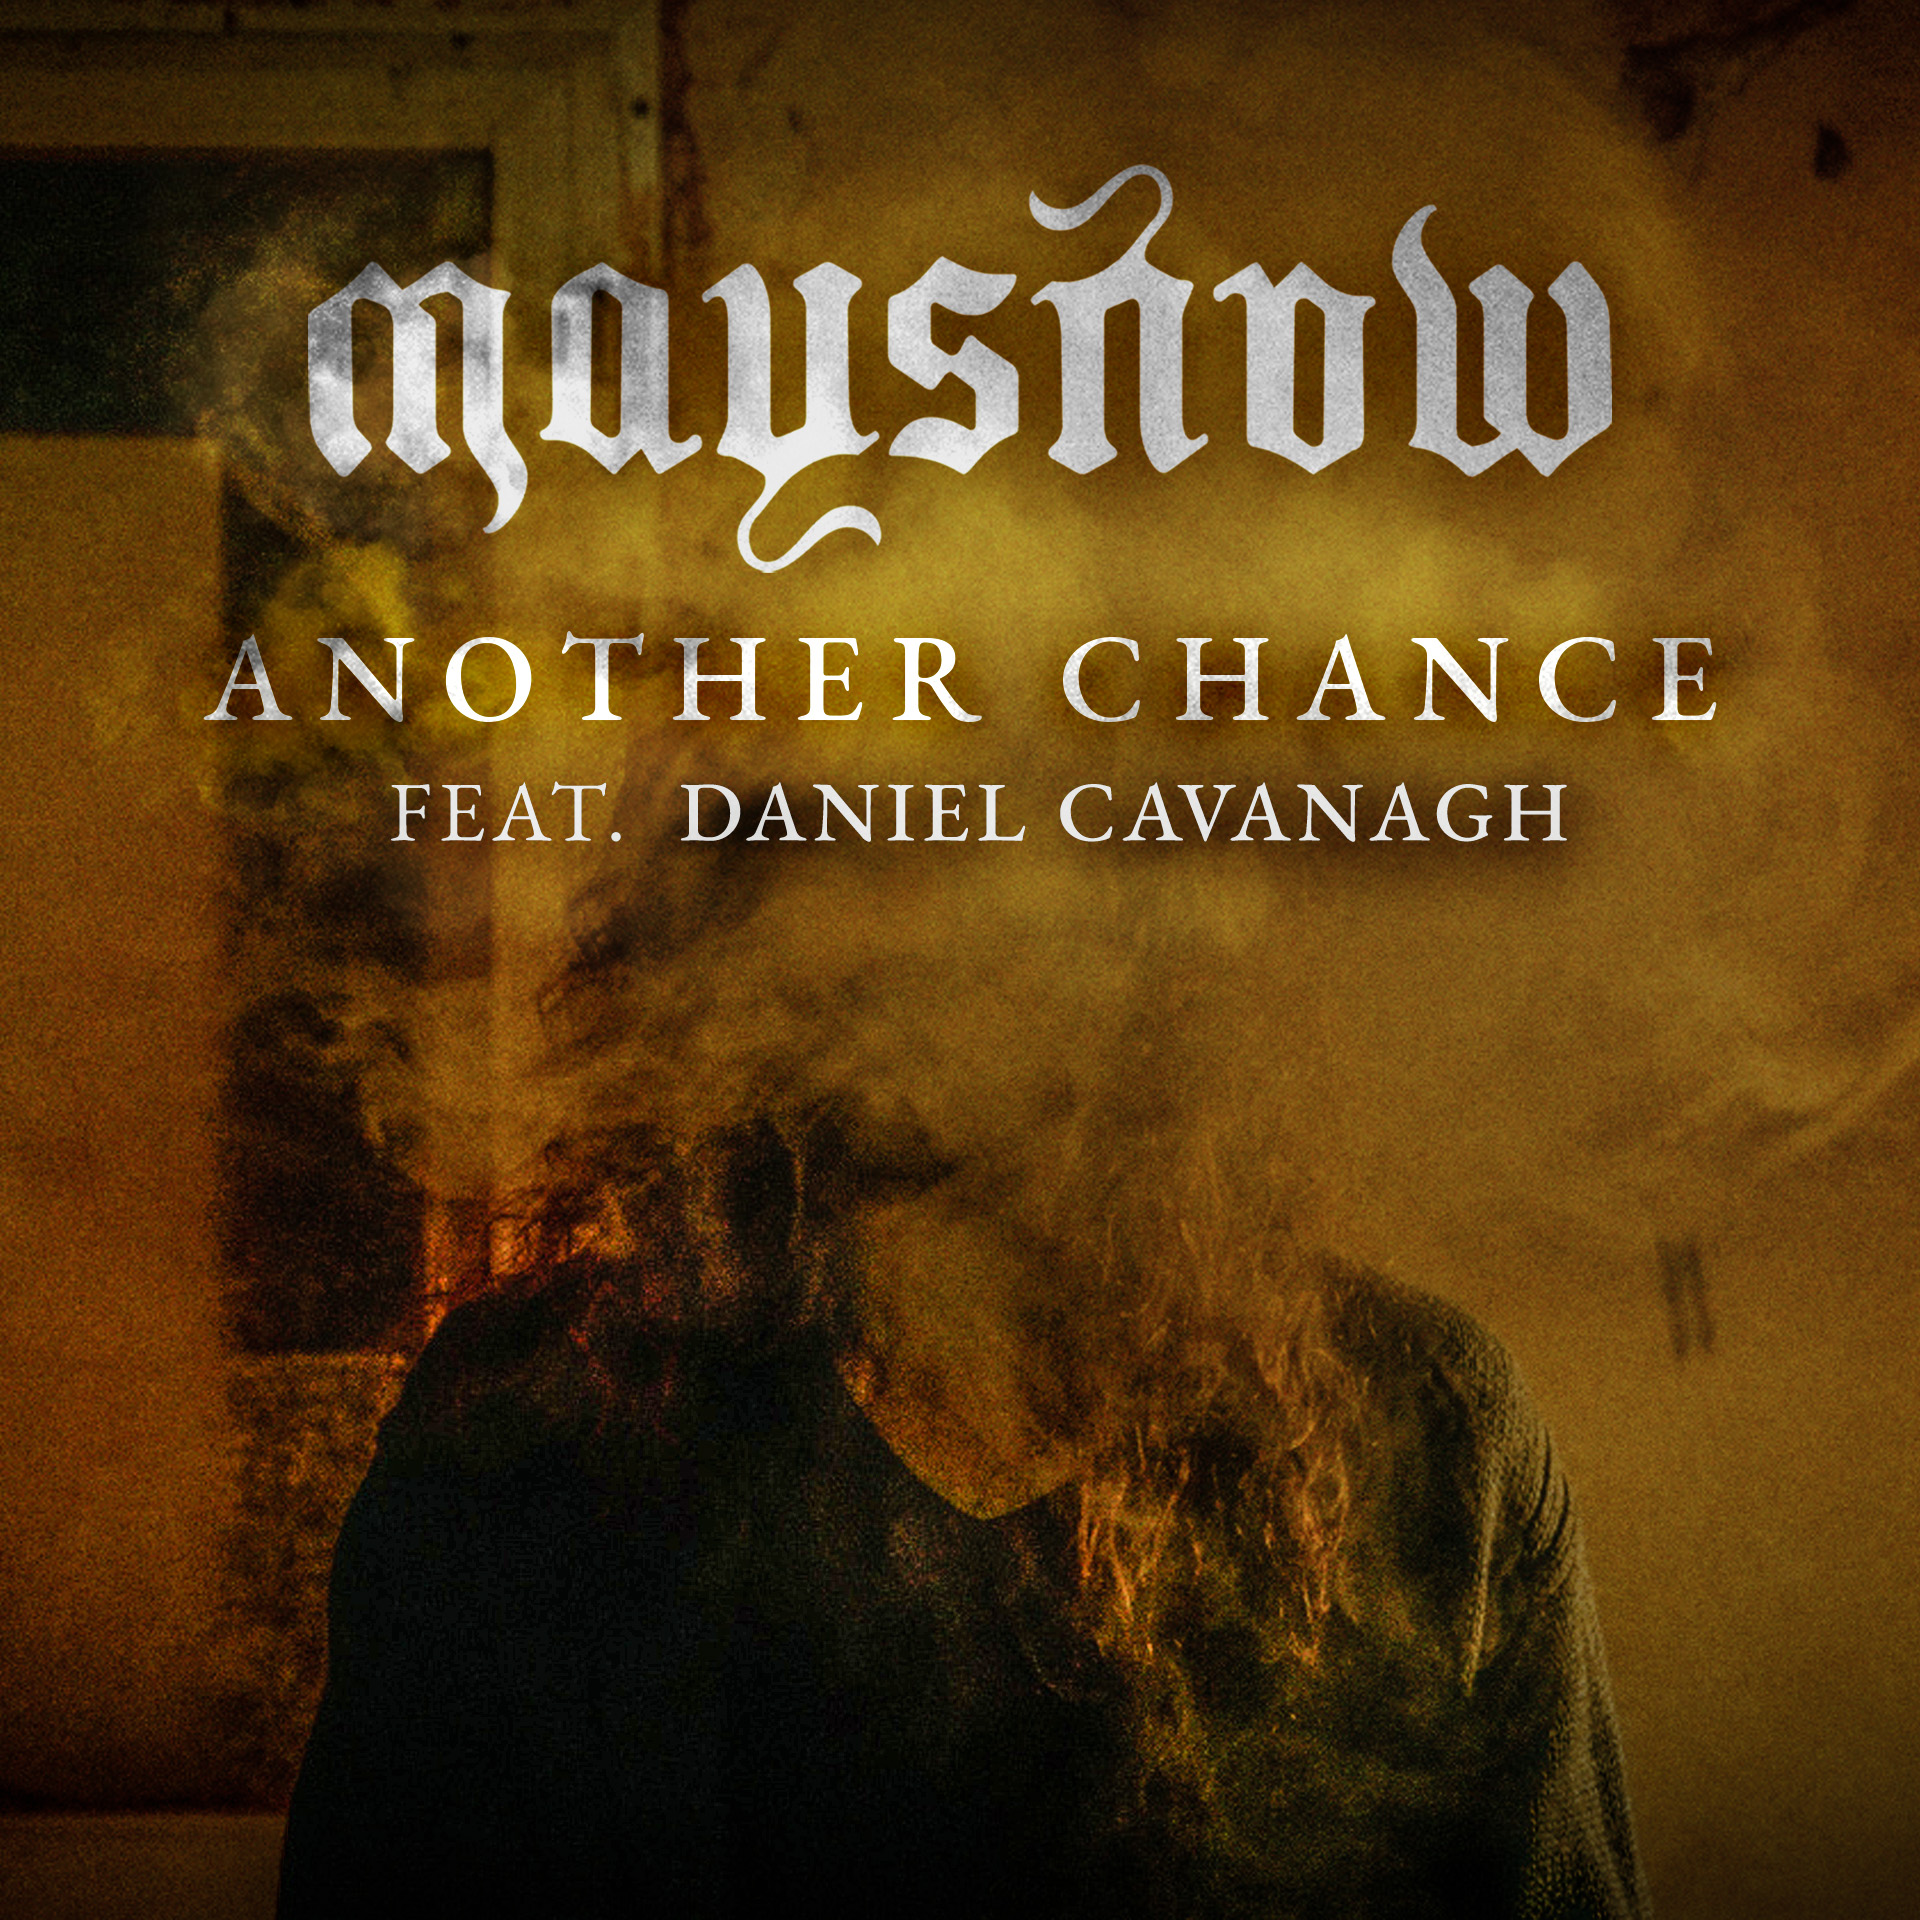 La Band Progressive Rock Leccese MAYSNOW Pubblica il Nuovo Singolo e Video “Another Chance” feat. Daniel Cavanagh degli ANATHEMA!